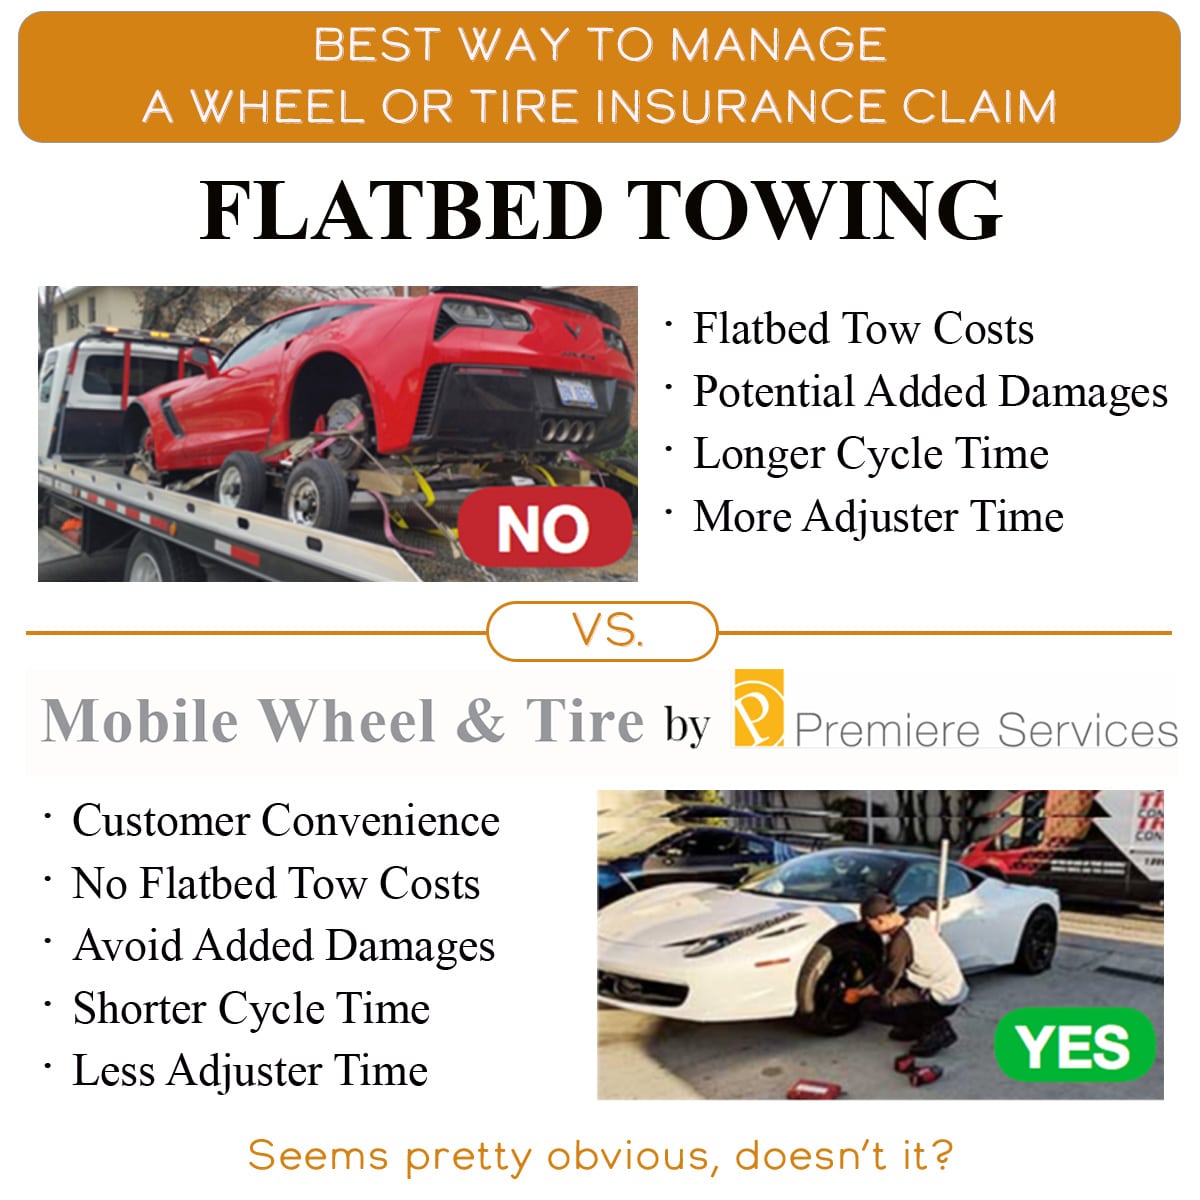 Flatbed Towing vs Mobile Repair